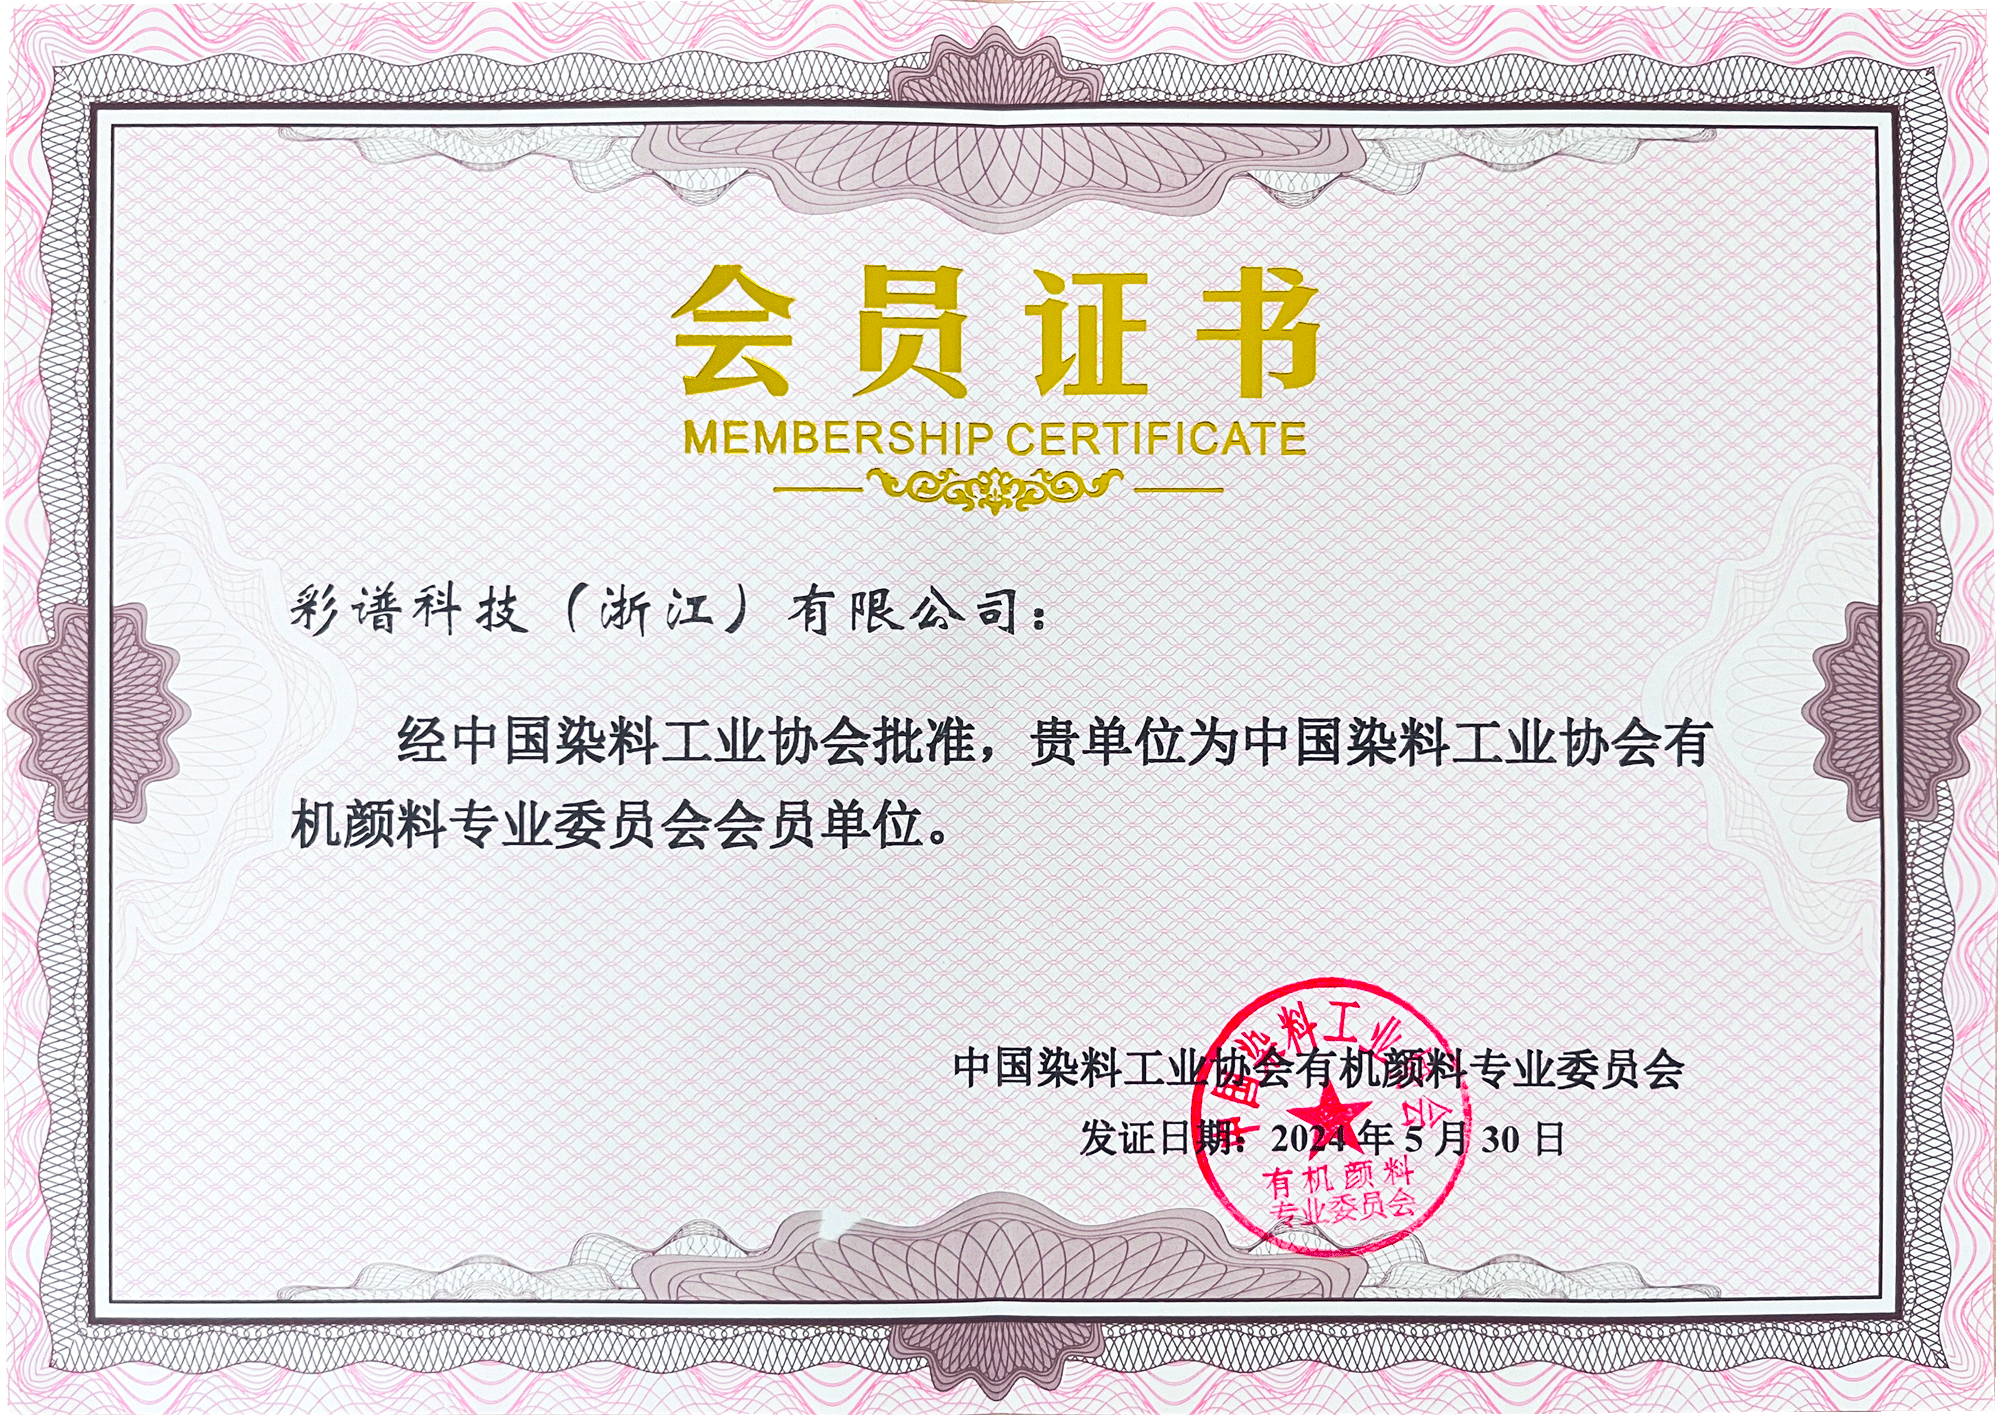 中国染料工业协会有机颜料专业委员会会员单位